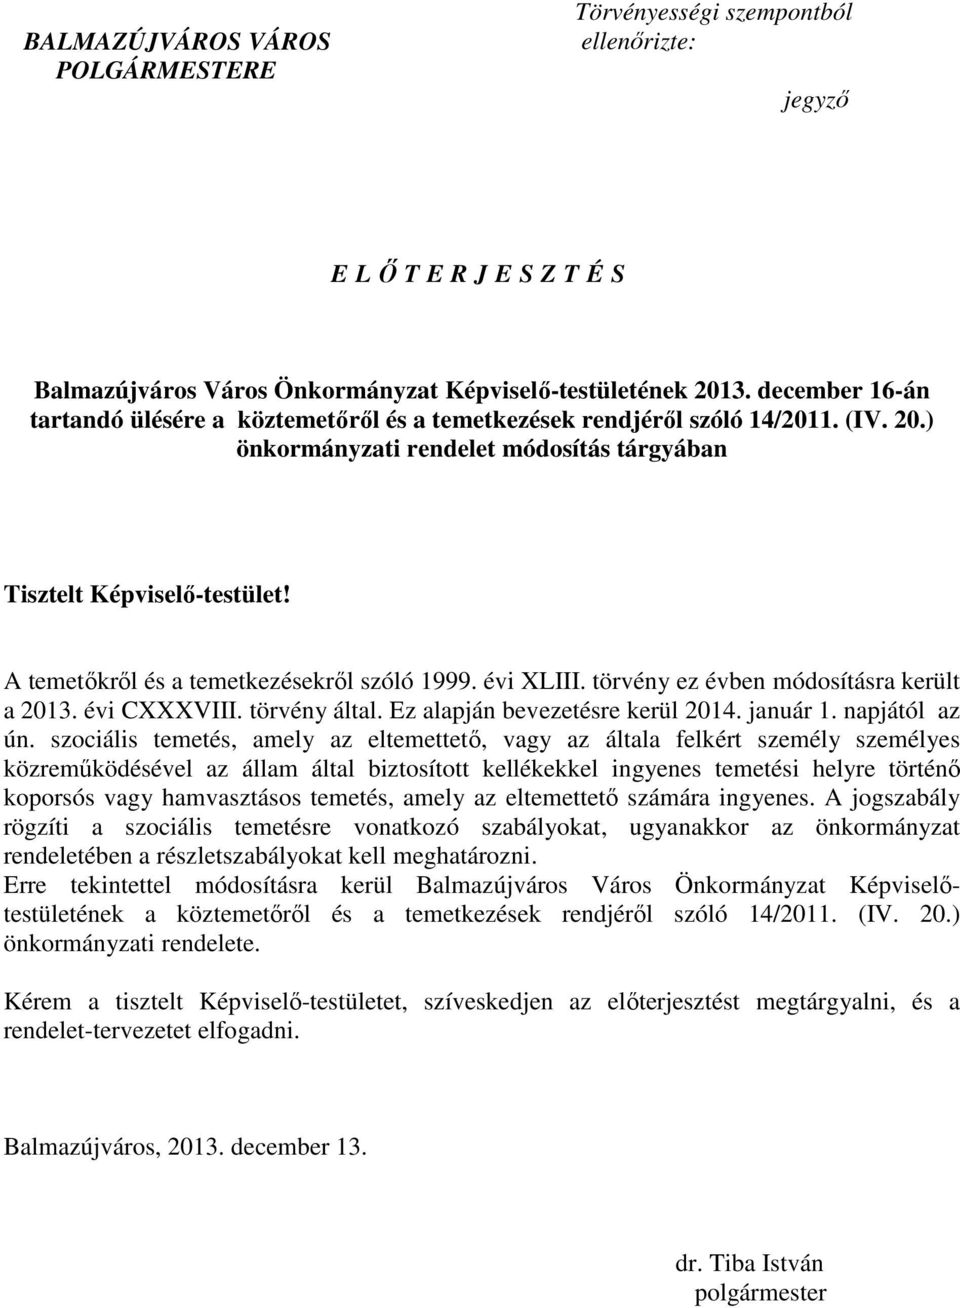 A temetıkrıl és a temetkezésekrıl szóló 1999. évi XLIII. törvény ez évben módosításra került a 2013. évi CXXXVIII. törvény által. Ez alapján bevezetésre kerül 2014. január 1. napjától az ún.